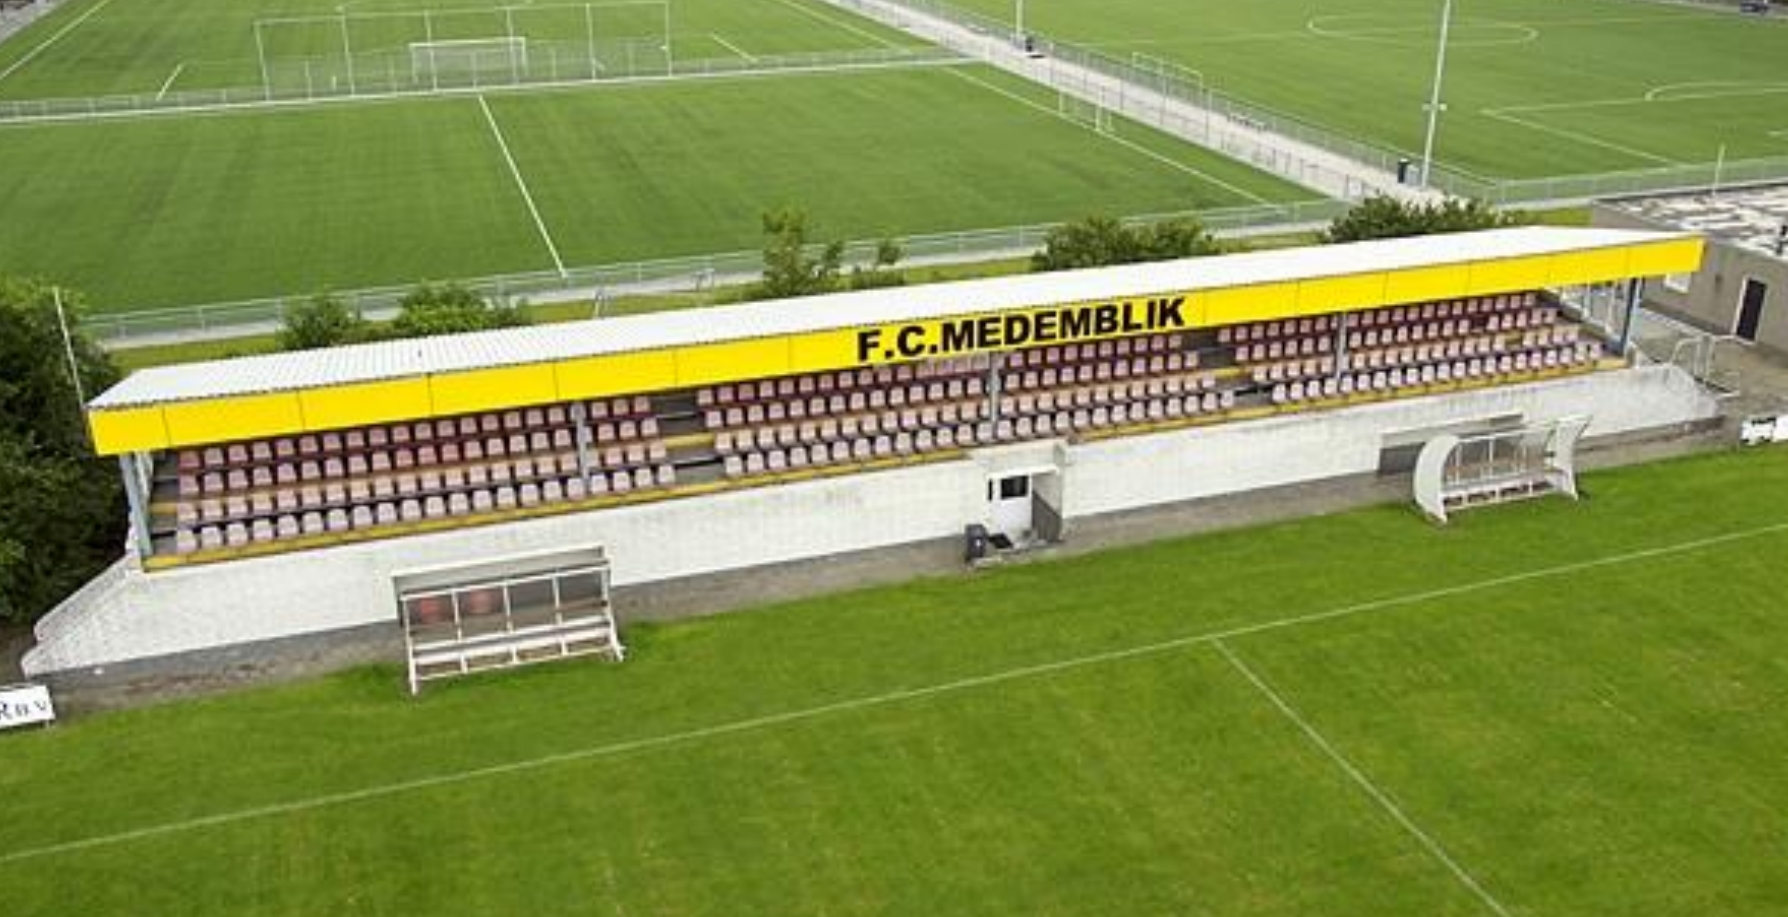 Medemblik moet Club van 100,  202.500 euro betalen voor overname tribune FC Medemblik, ‘aanslag op gemeentelijk budget’